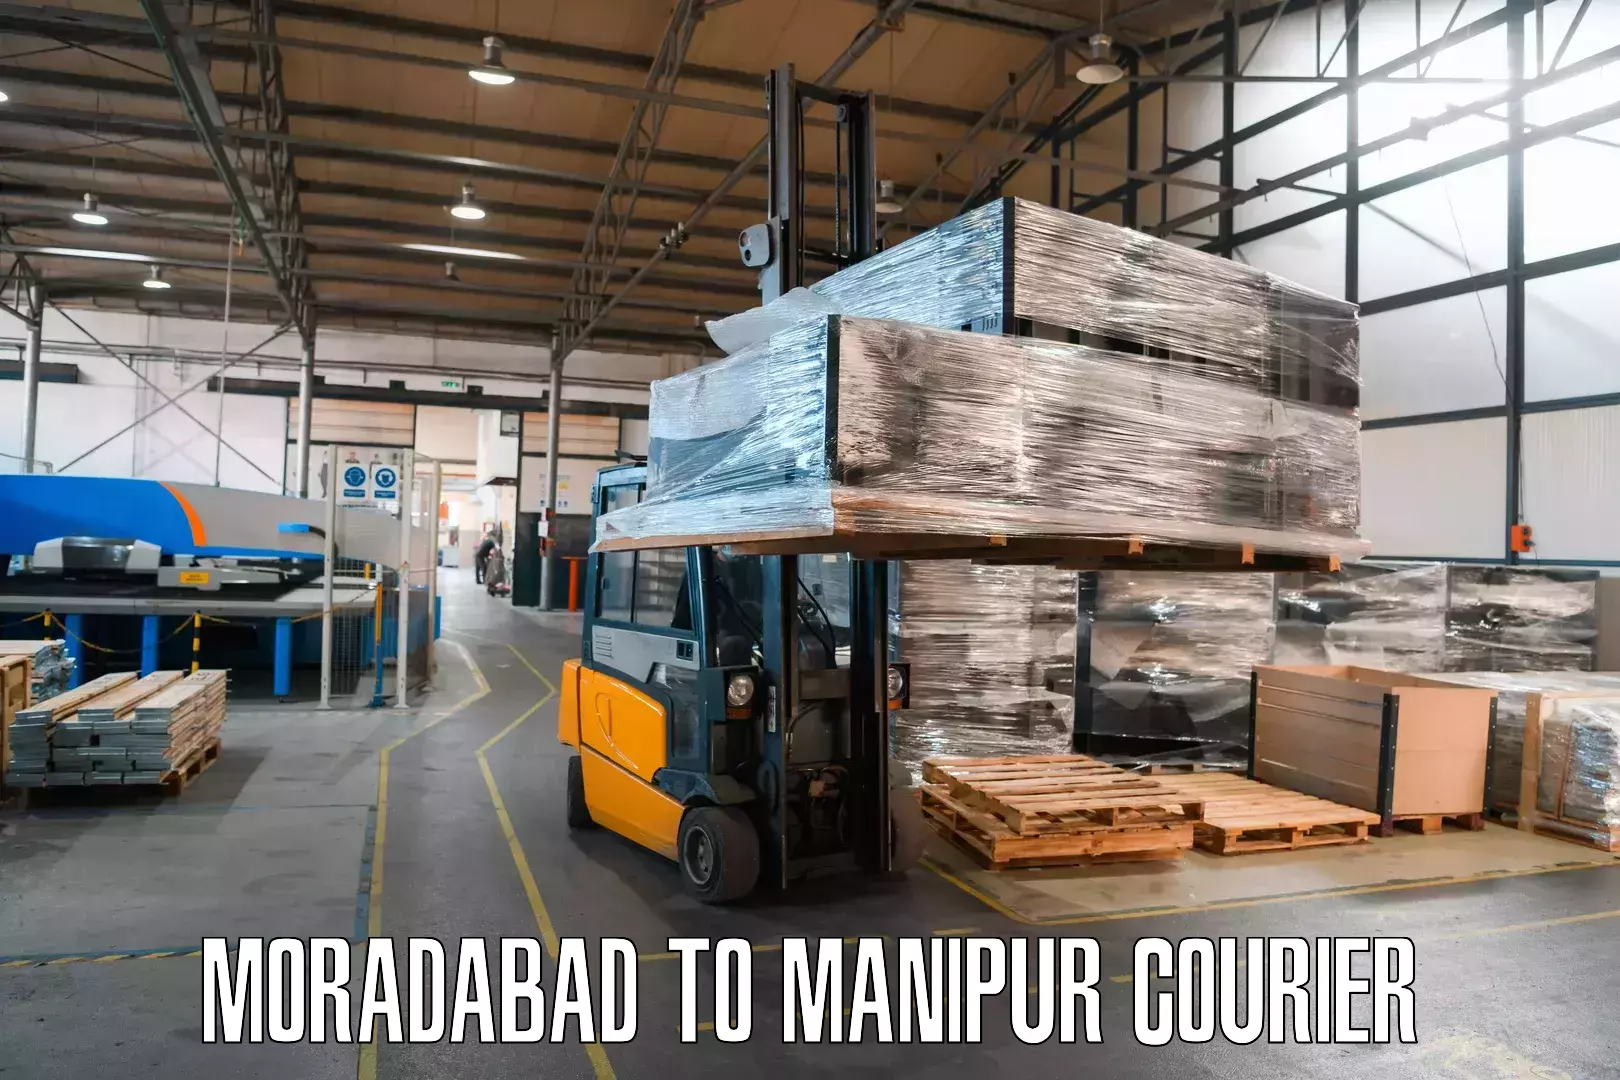 Cargo delivery service Moradabad to IIIT Senapati